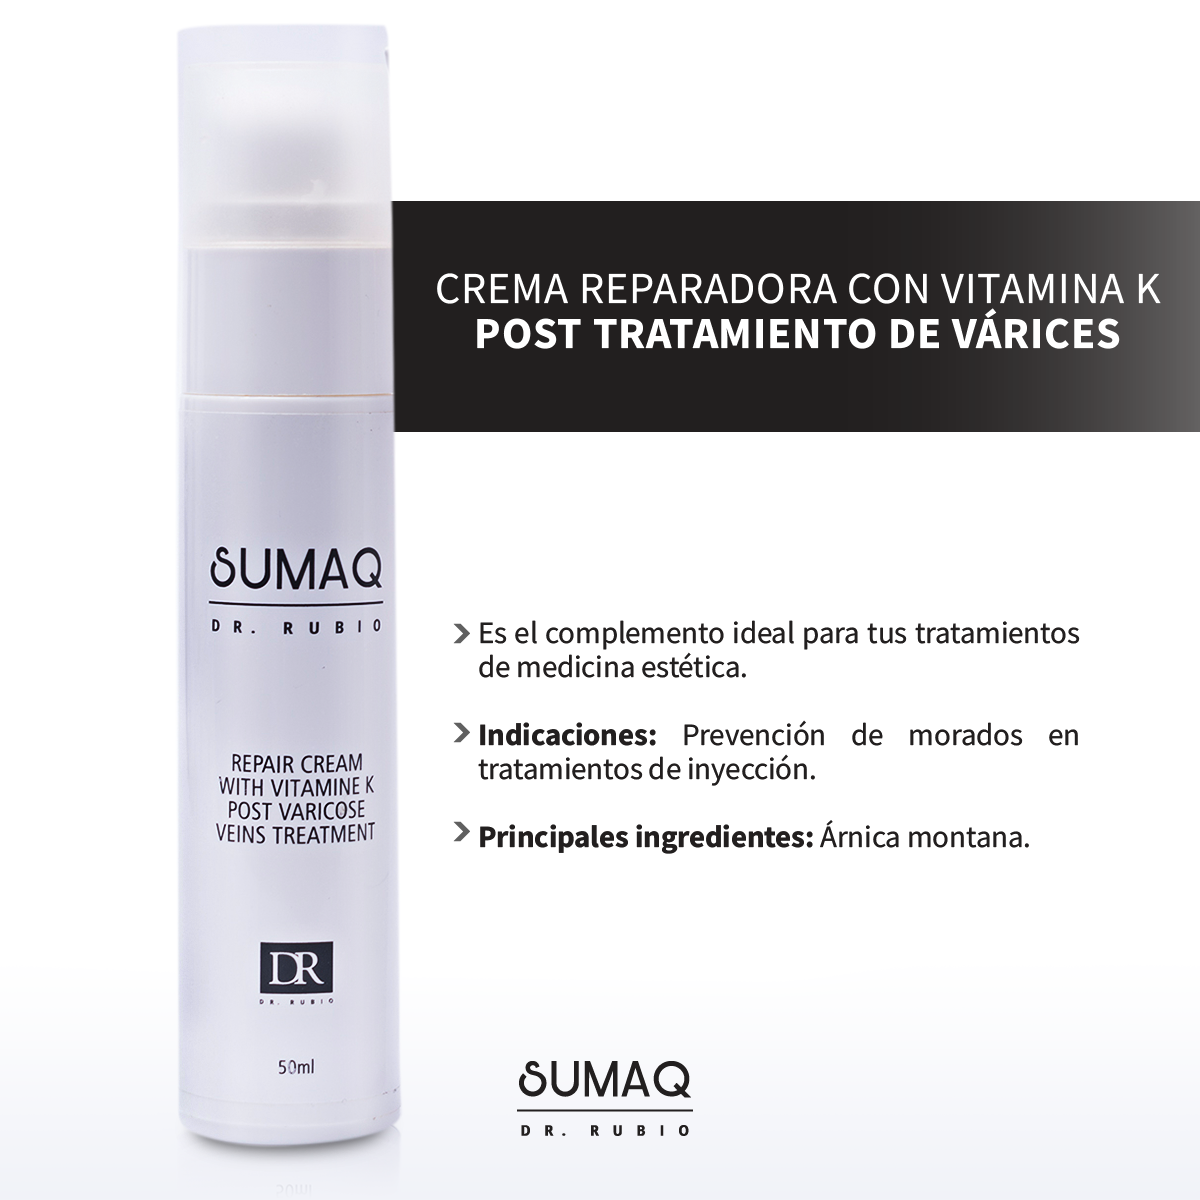 Crema reparadora con Vitamina K post tratamiento de varices - SUMAQ